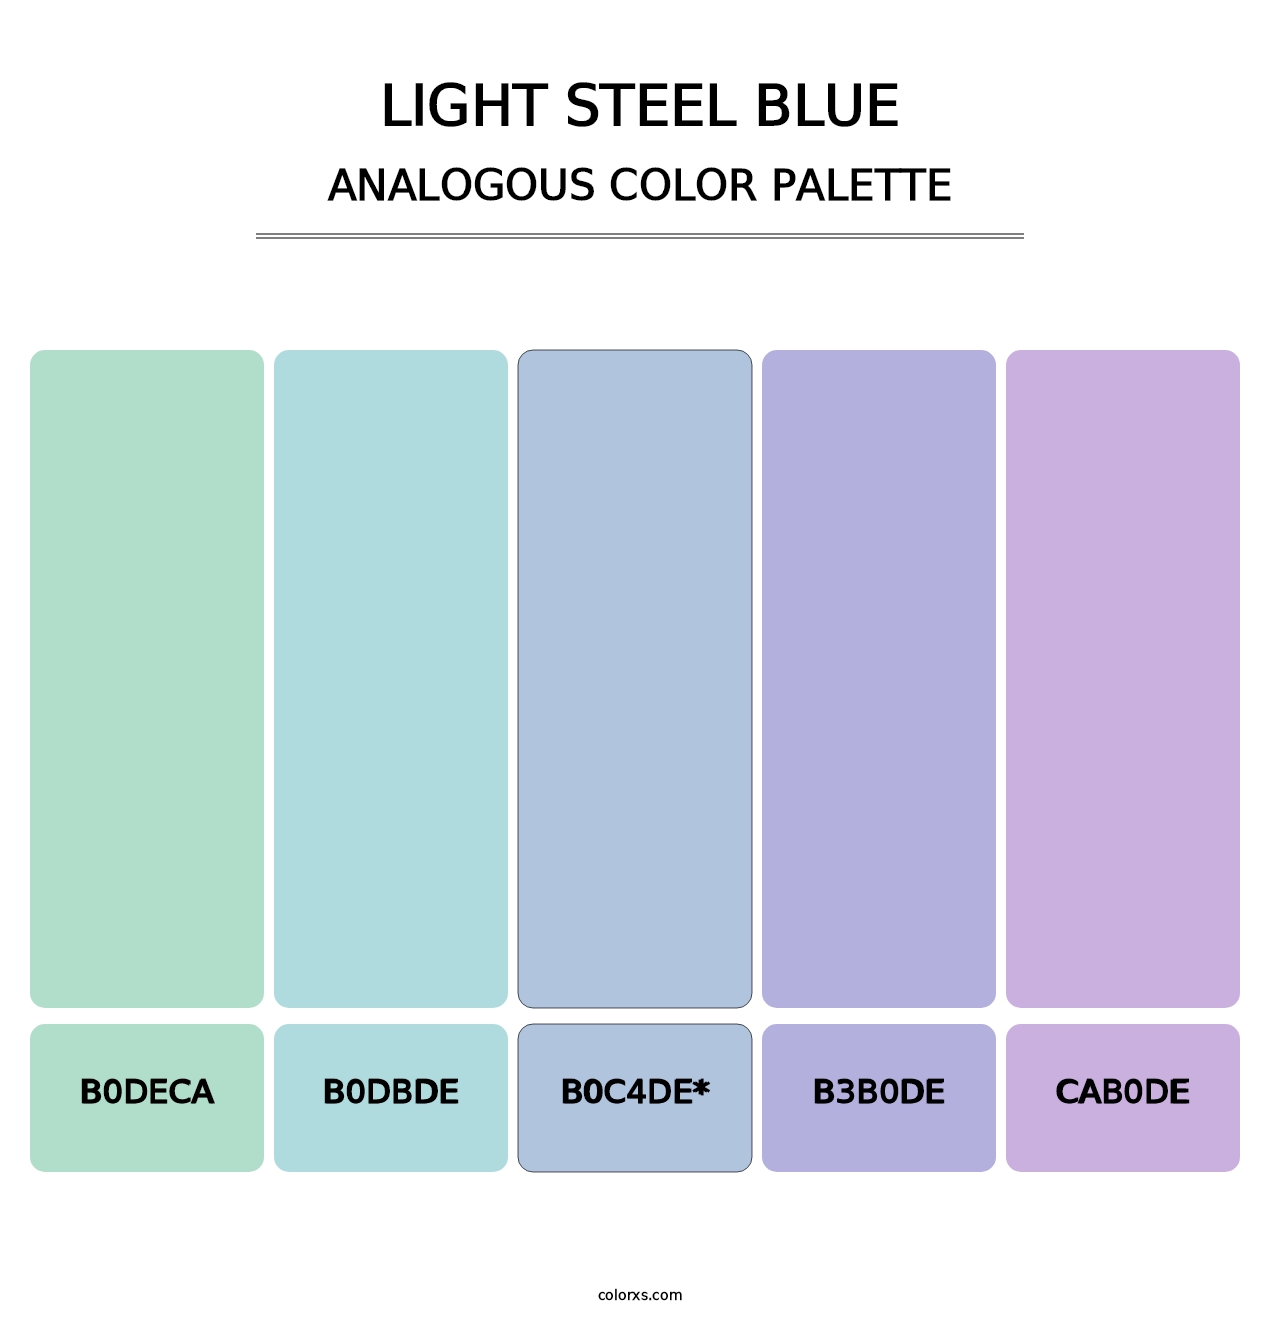 Light Steel Blue - Analogous Color Palette